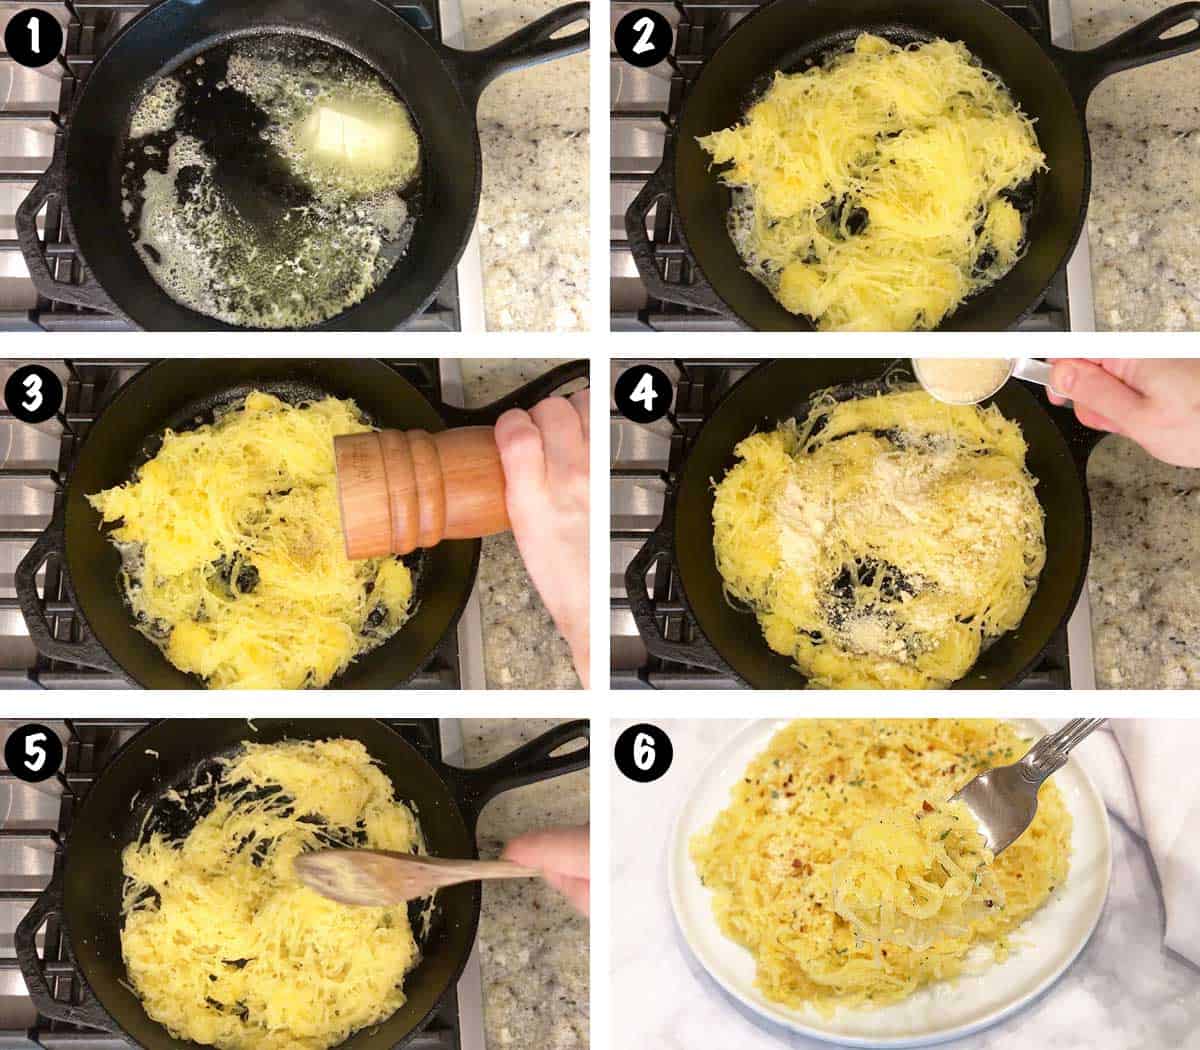 Un collage de seis fotos que muestra los pasos para hacer fideos de calabaza espagueti. 